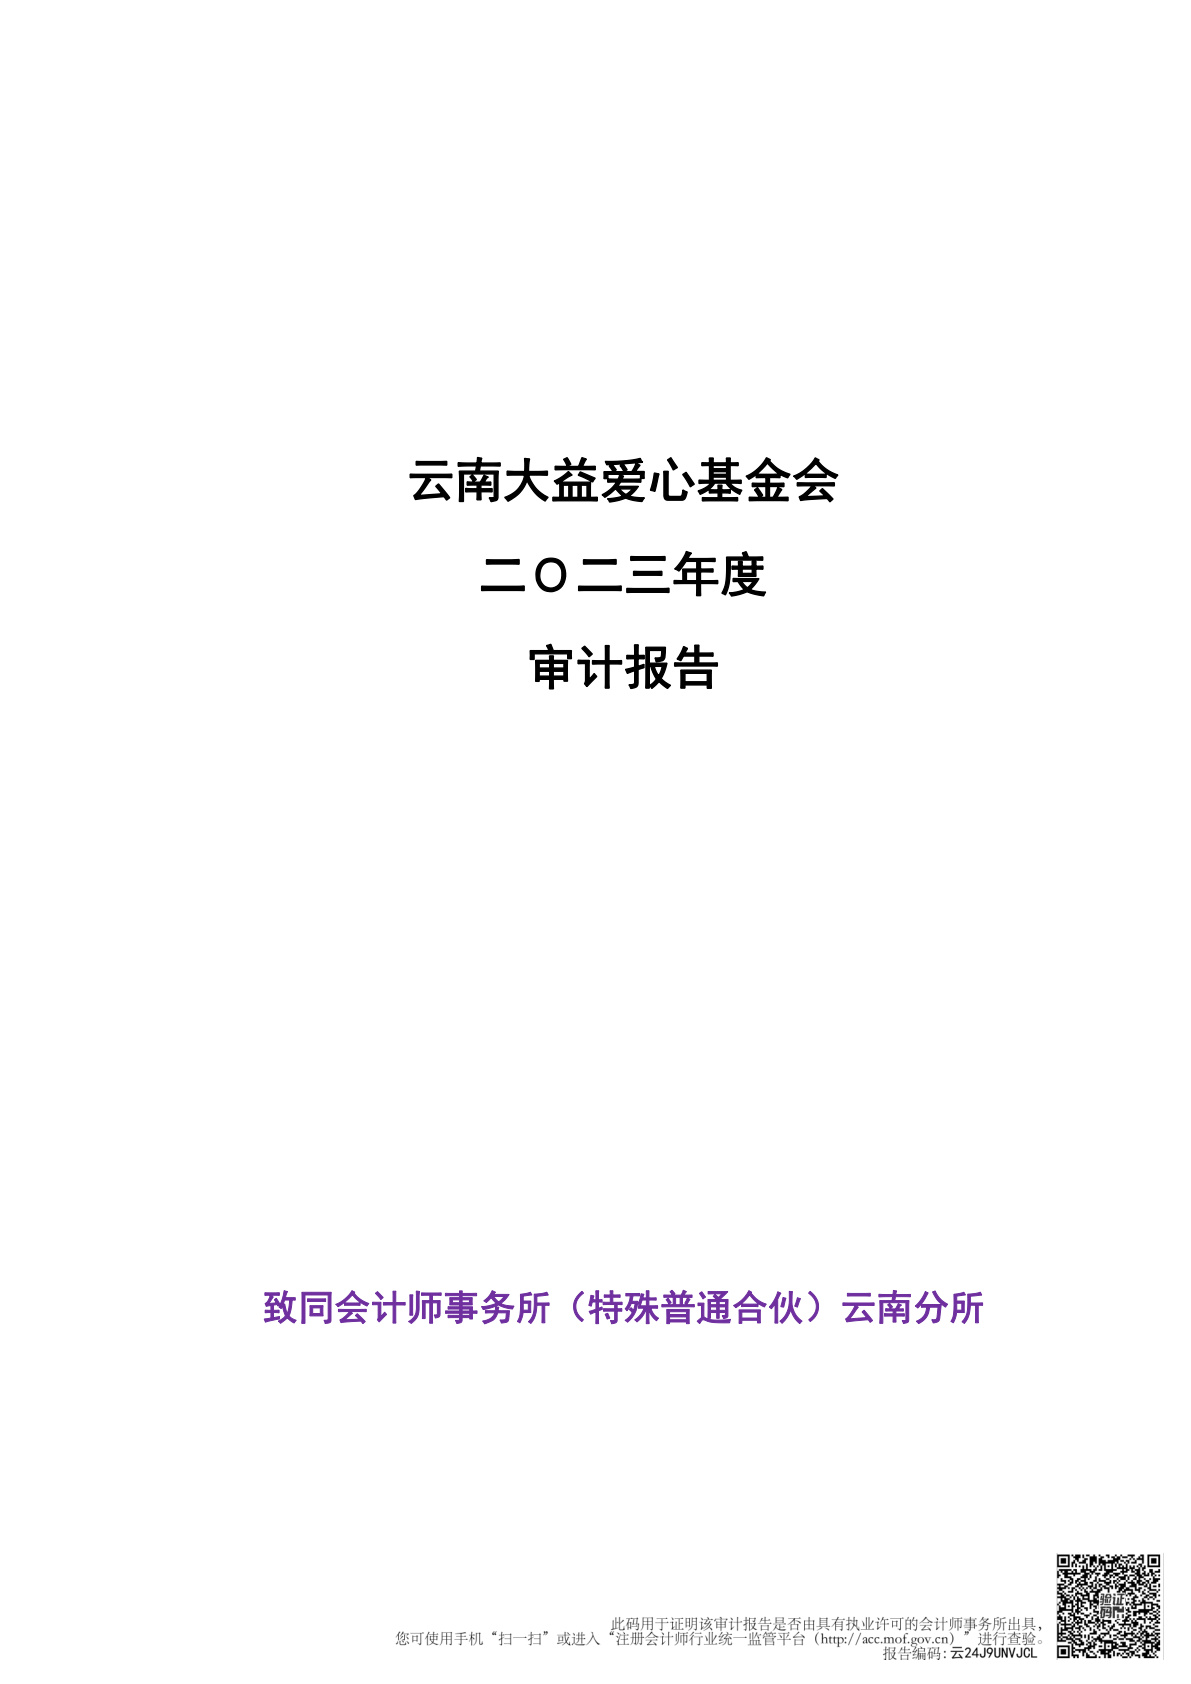 云南大益爱心基金会二Ｏ二三年度审计报告公示 (2024-04-09)